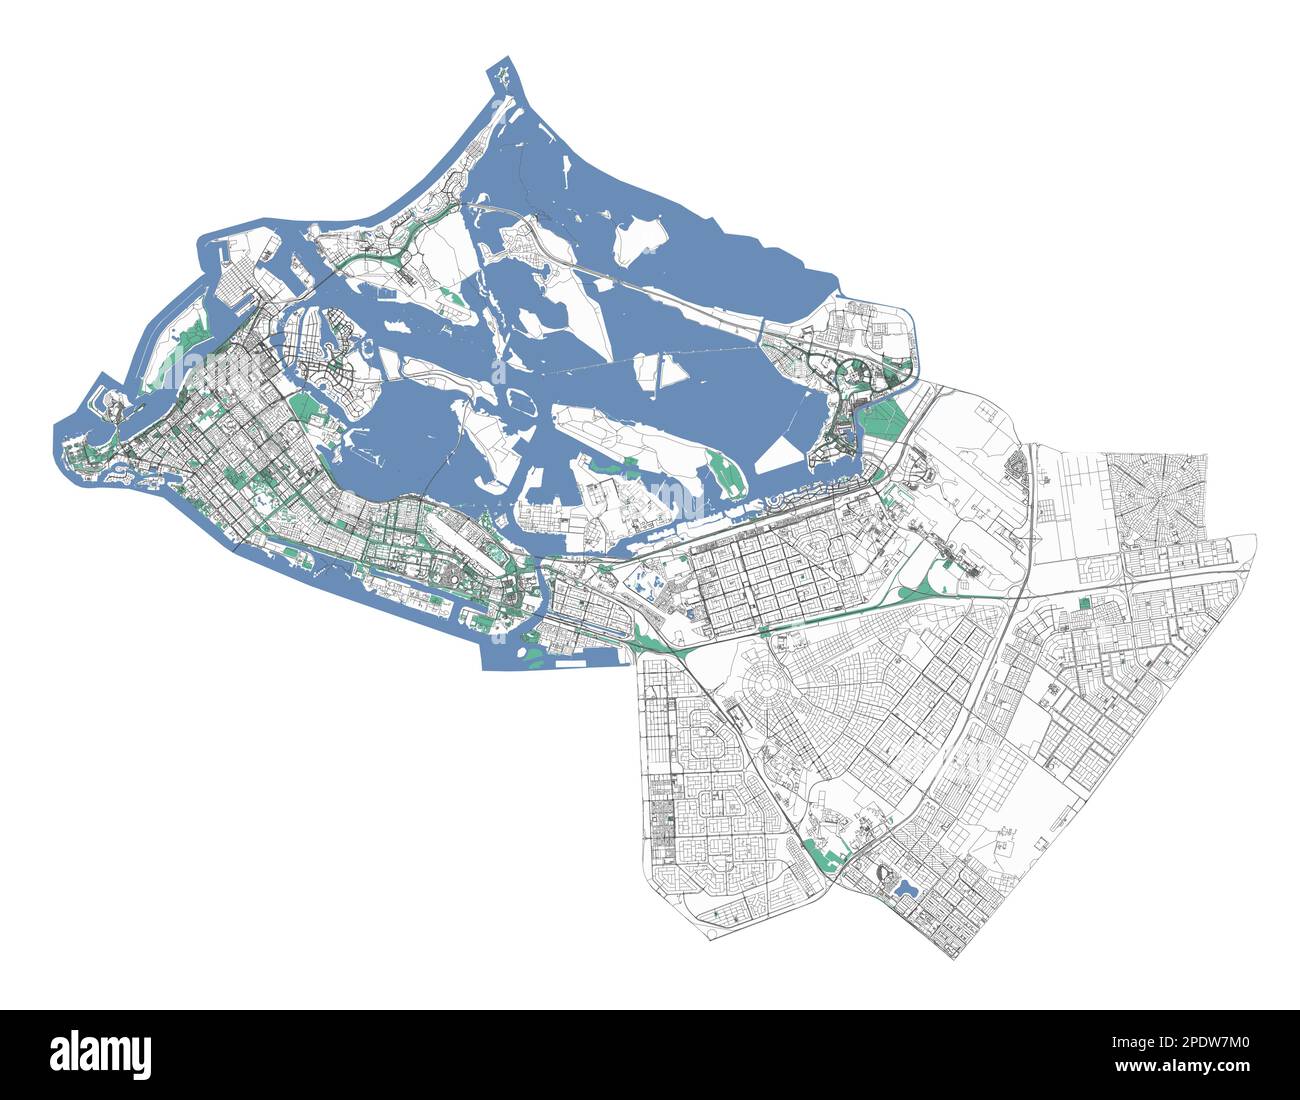 Mappa di Abu Dhabi, territorio amministrativo della città. Capitale degli Emirati Arabi Uniti piano dettagliato della città. Vector ilustration con strade, parchi, isole e coste. Illustrazione Vettoriale